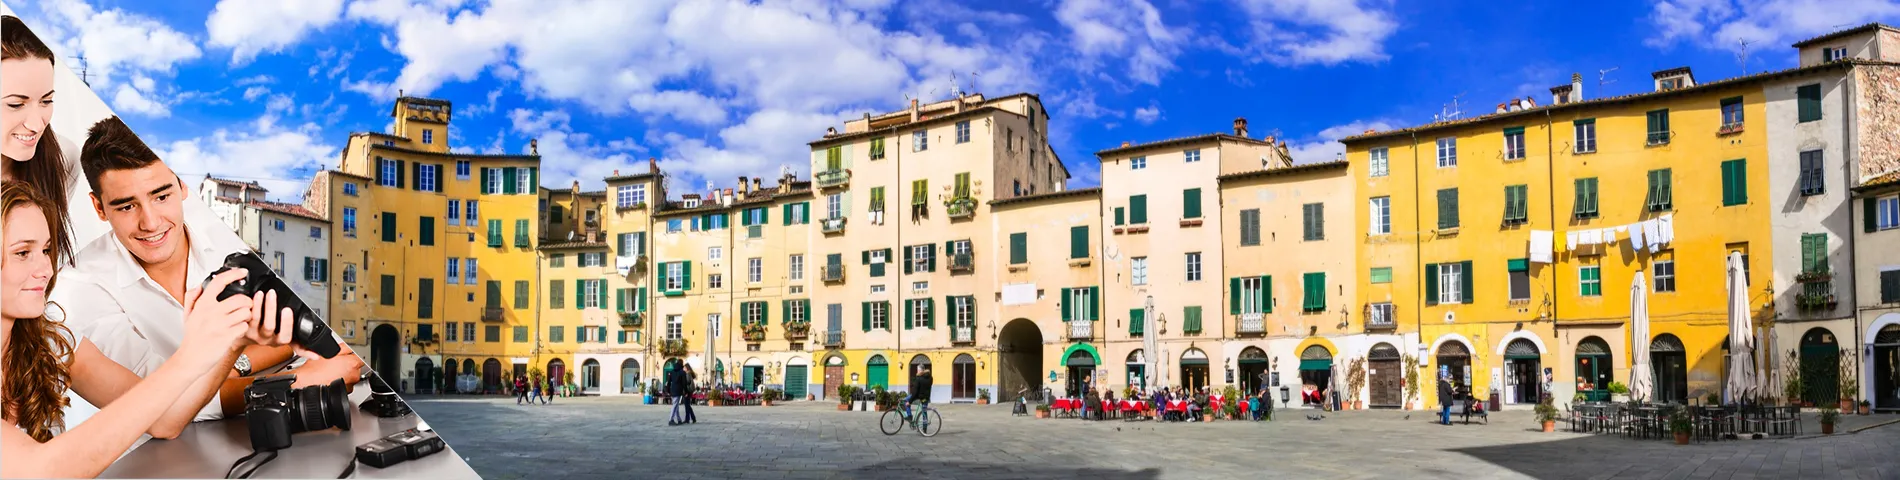 Lucca - Italia & Valokuvaus